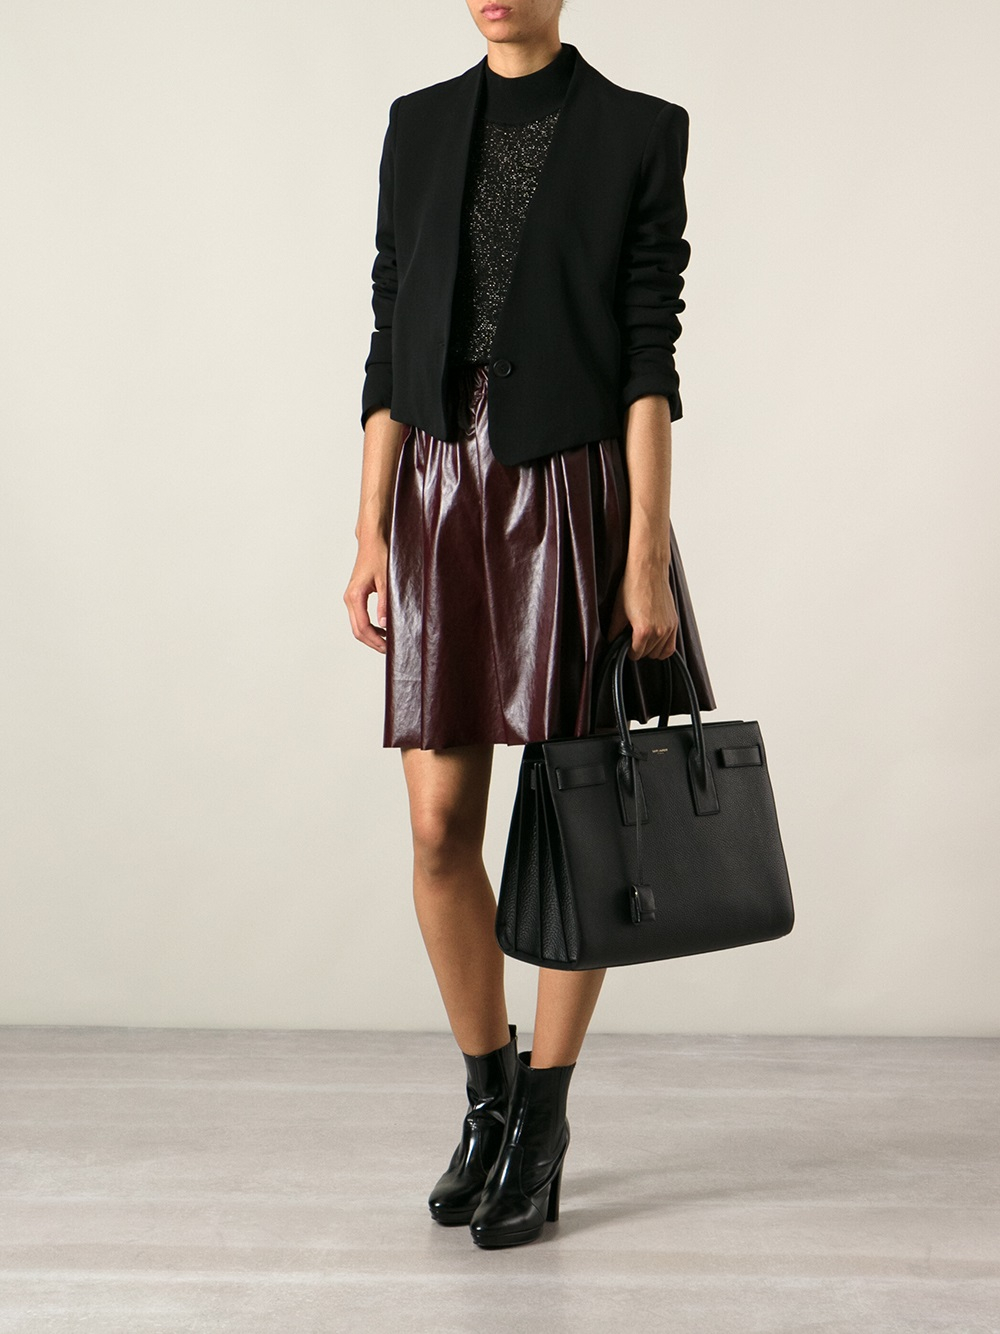 Saint Laurent Pebble Leather Medium Sac De Jour Shopper Bag Black